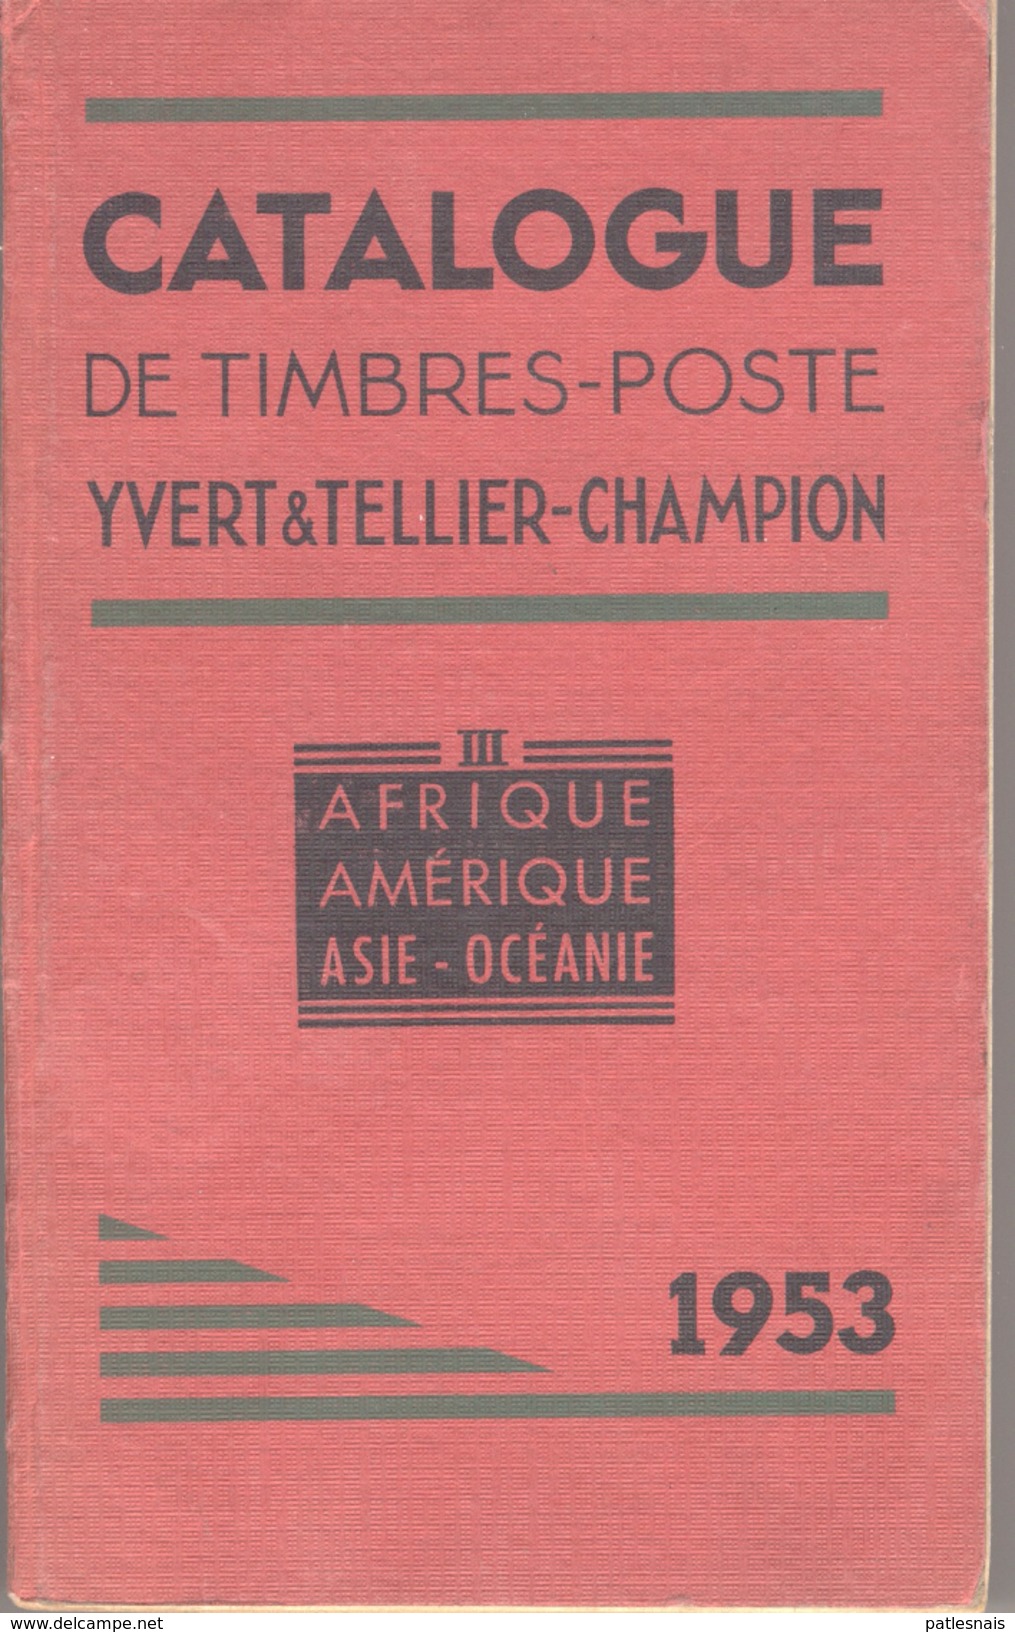 Yvert & Tellier-Champion   Année  1953   Tome III  Afrique Amérique Asie-Océanie - Frankreich